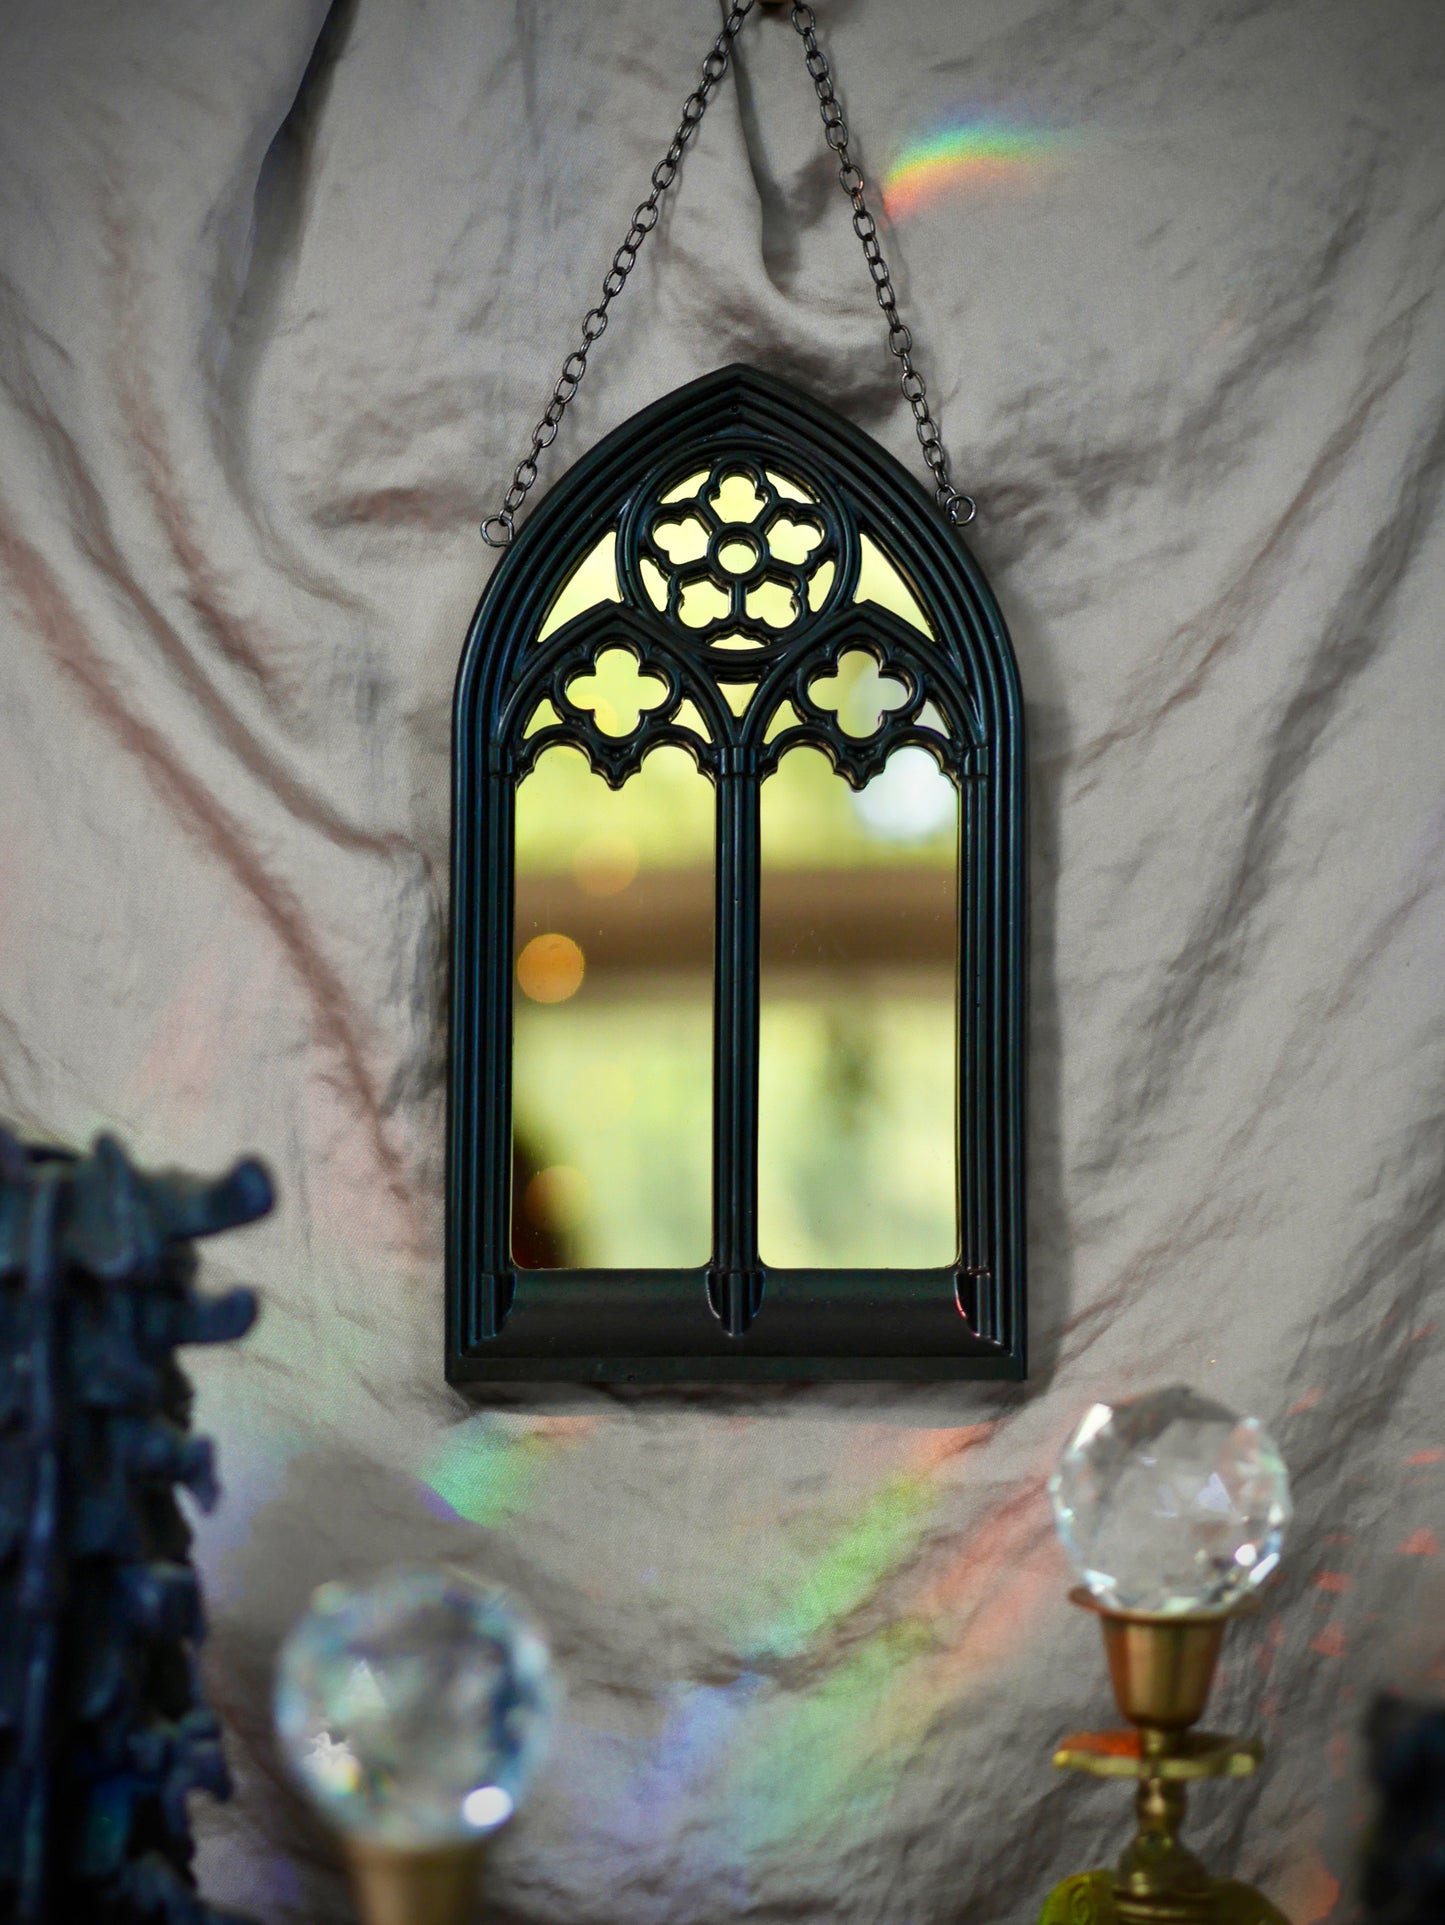 Gothic Arches Mirror - Gold Mirror on Chain